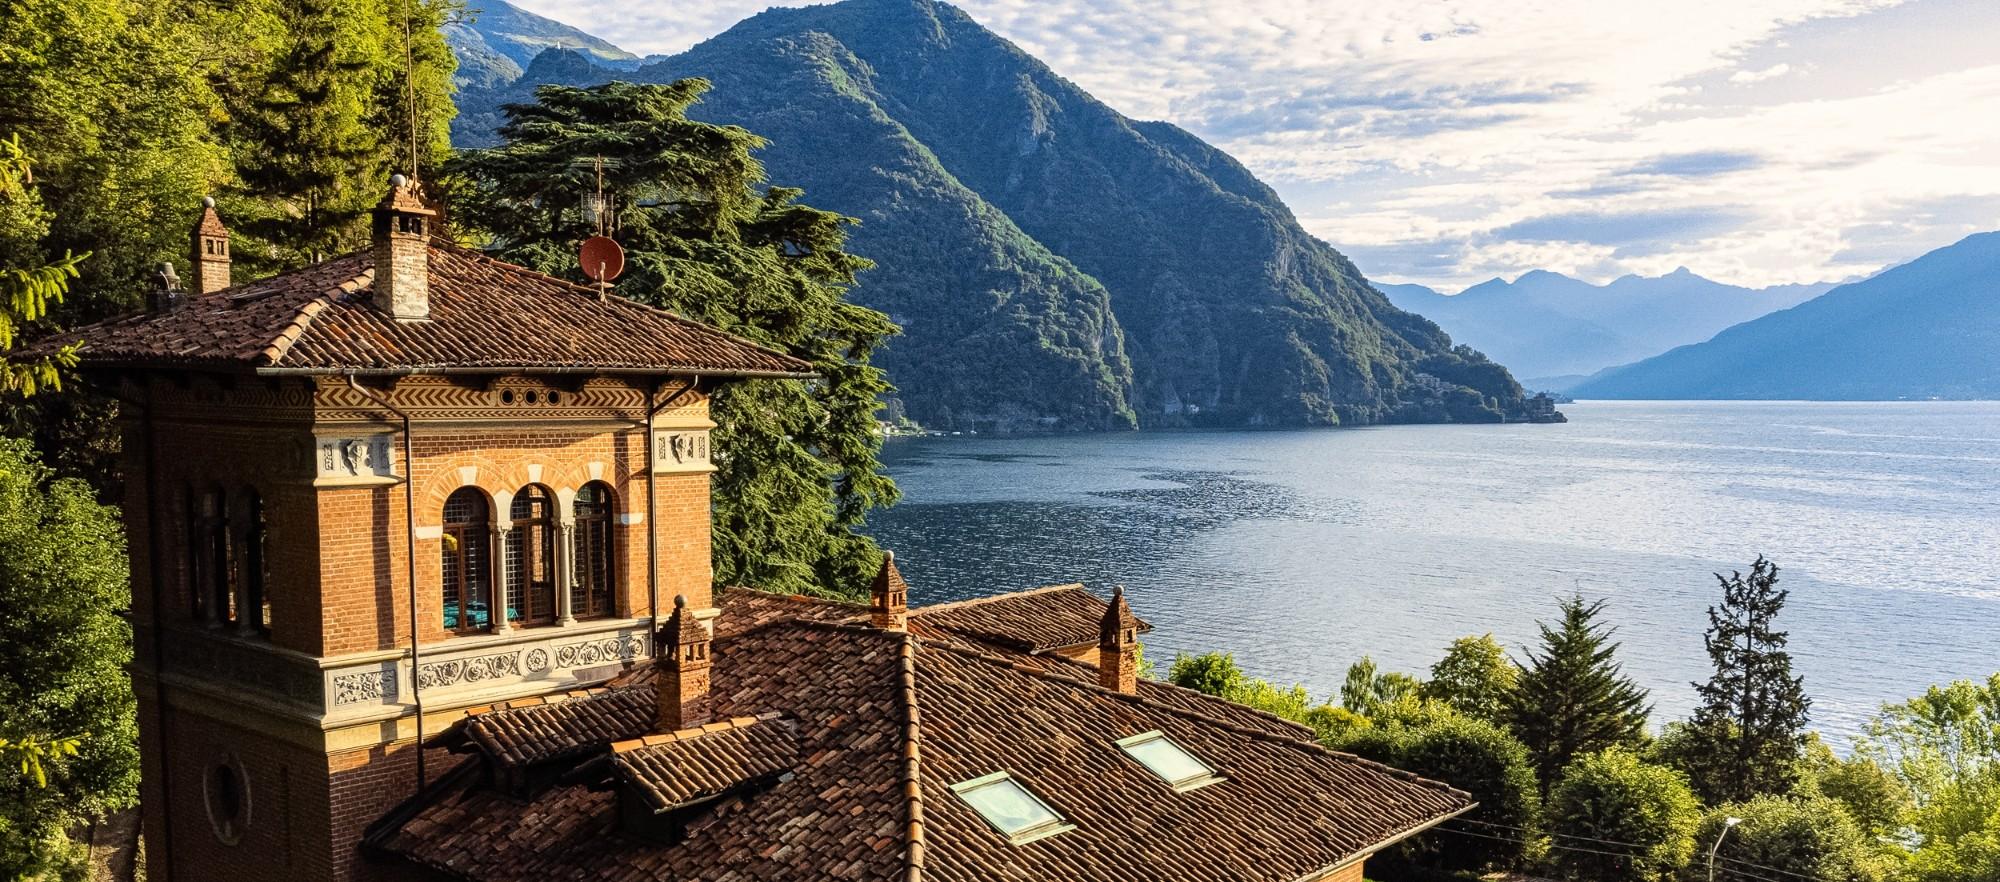 Lake Como Dream Home